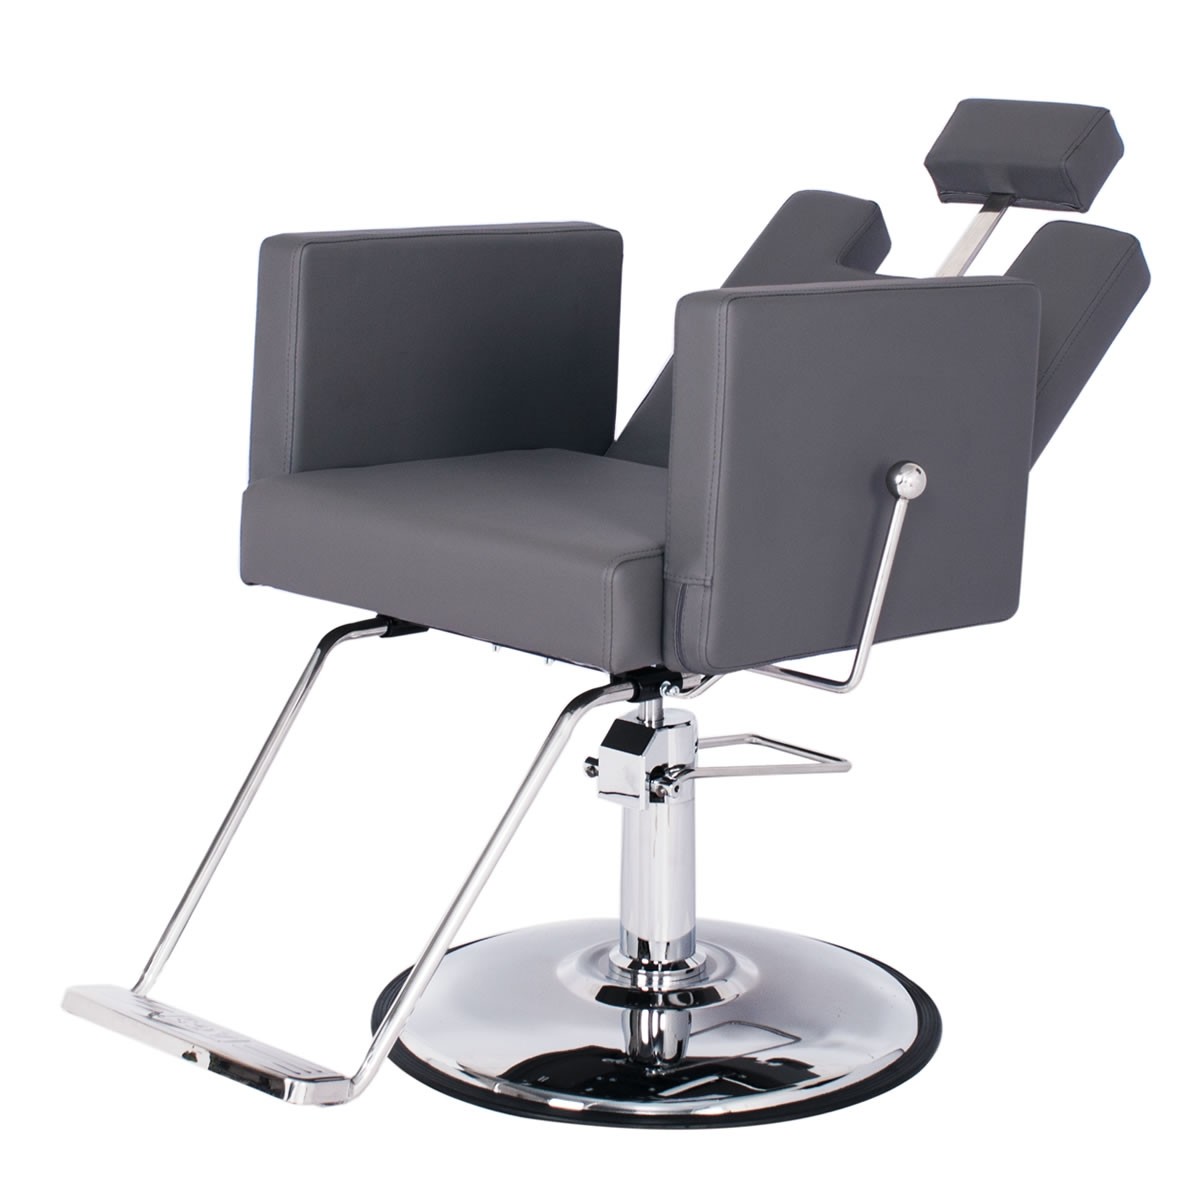 "CANON" Reclining Salon Chair, Reclining Shampoo Chair, All Purpose